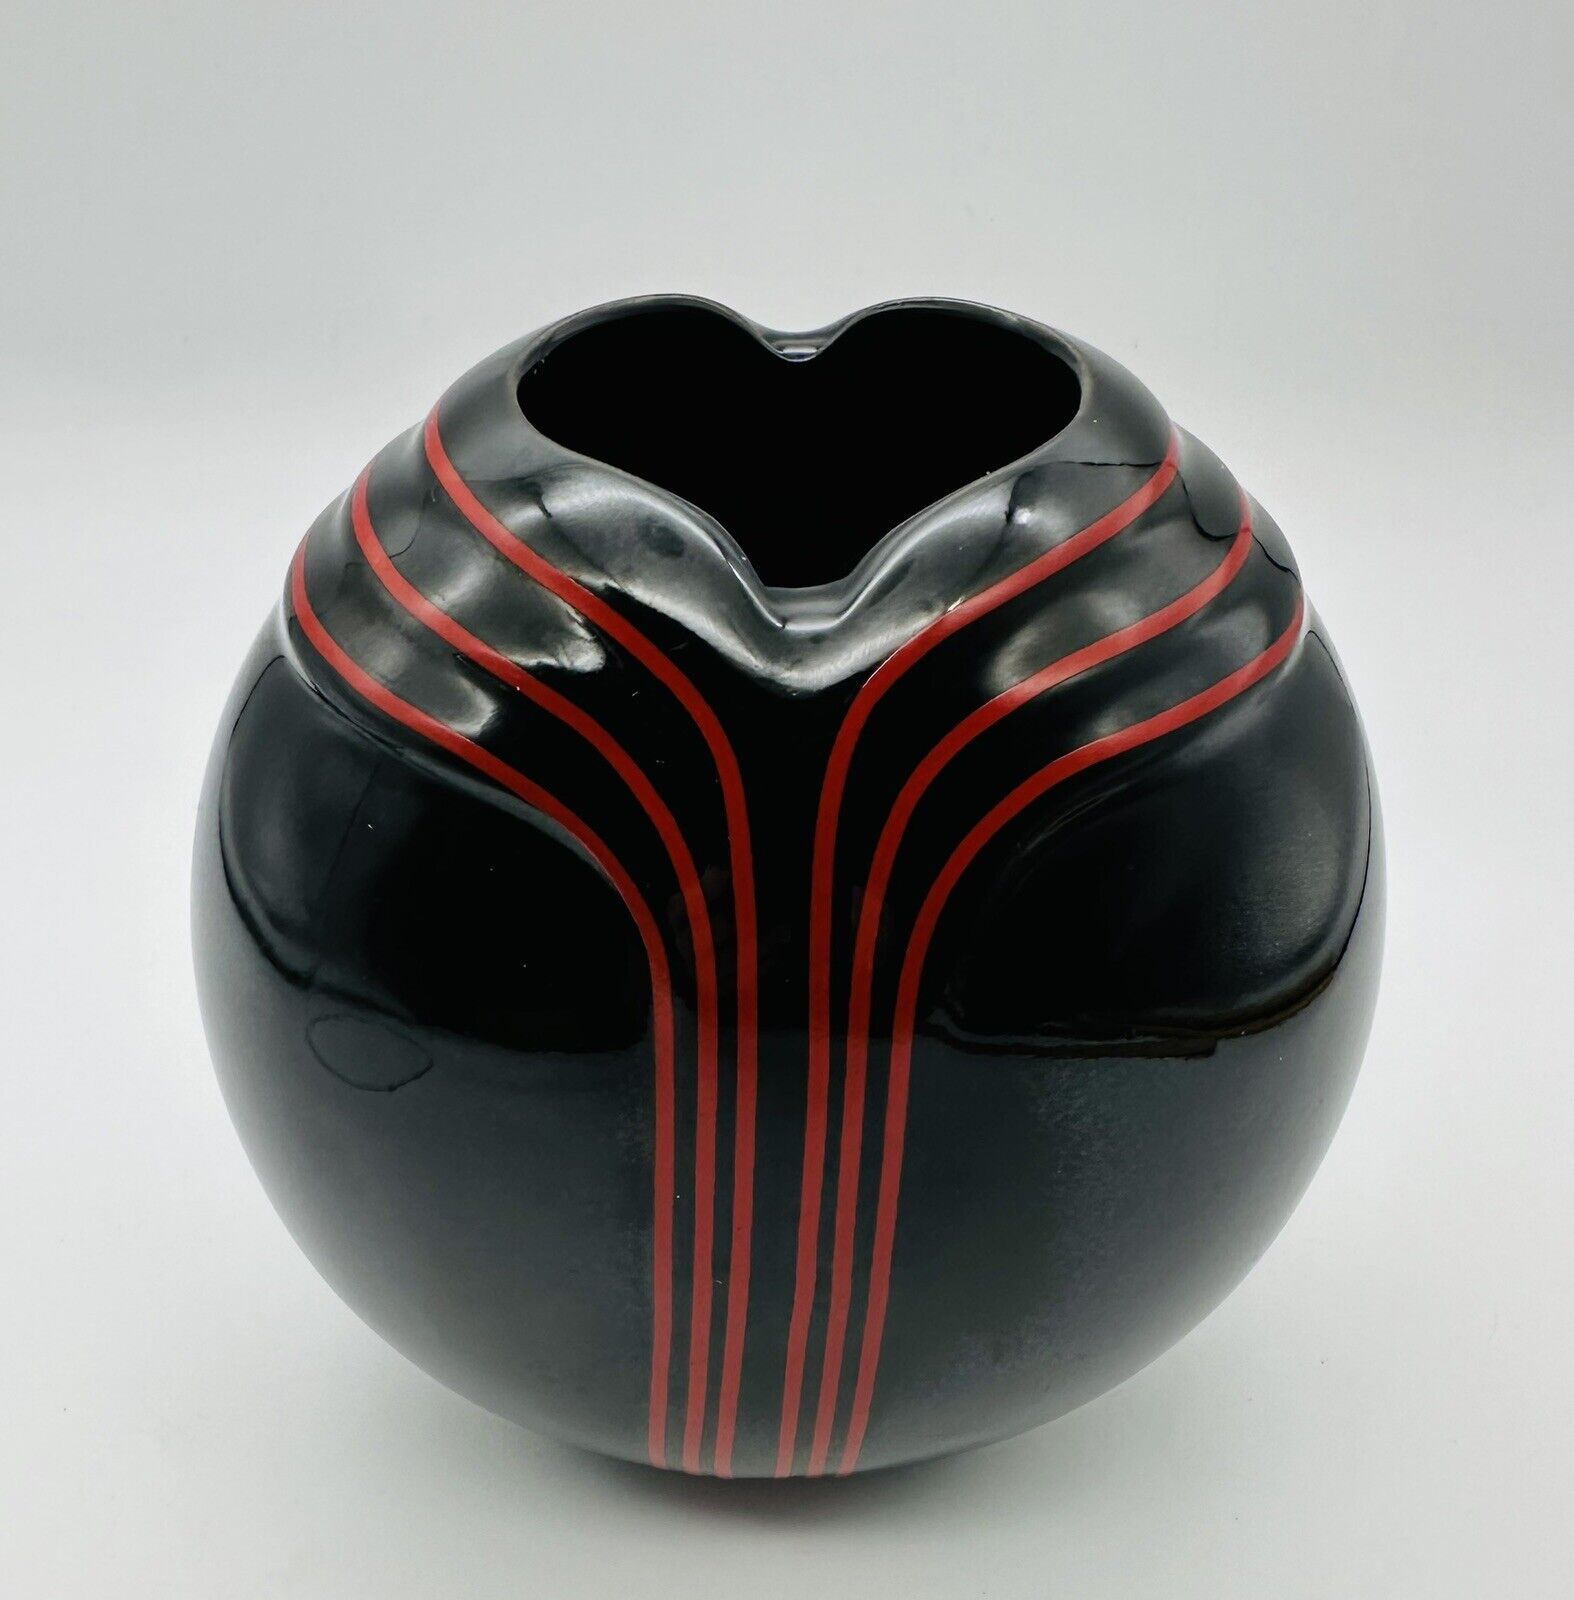 Vintage 1980s Art Deco Style Bud Vase Black Red Stripes TOYO Japan Porcelain